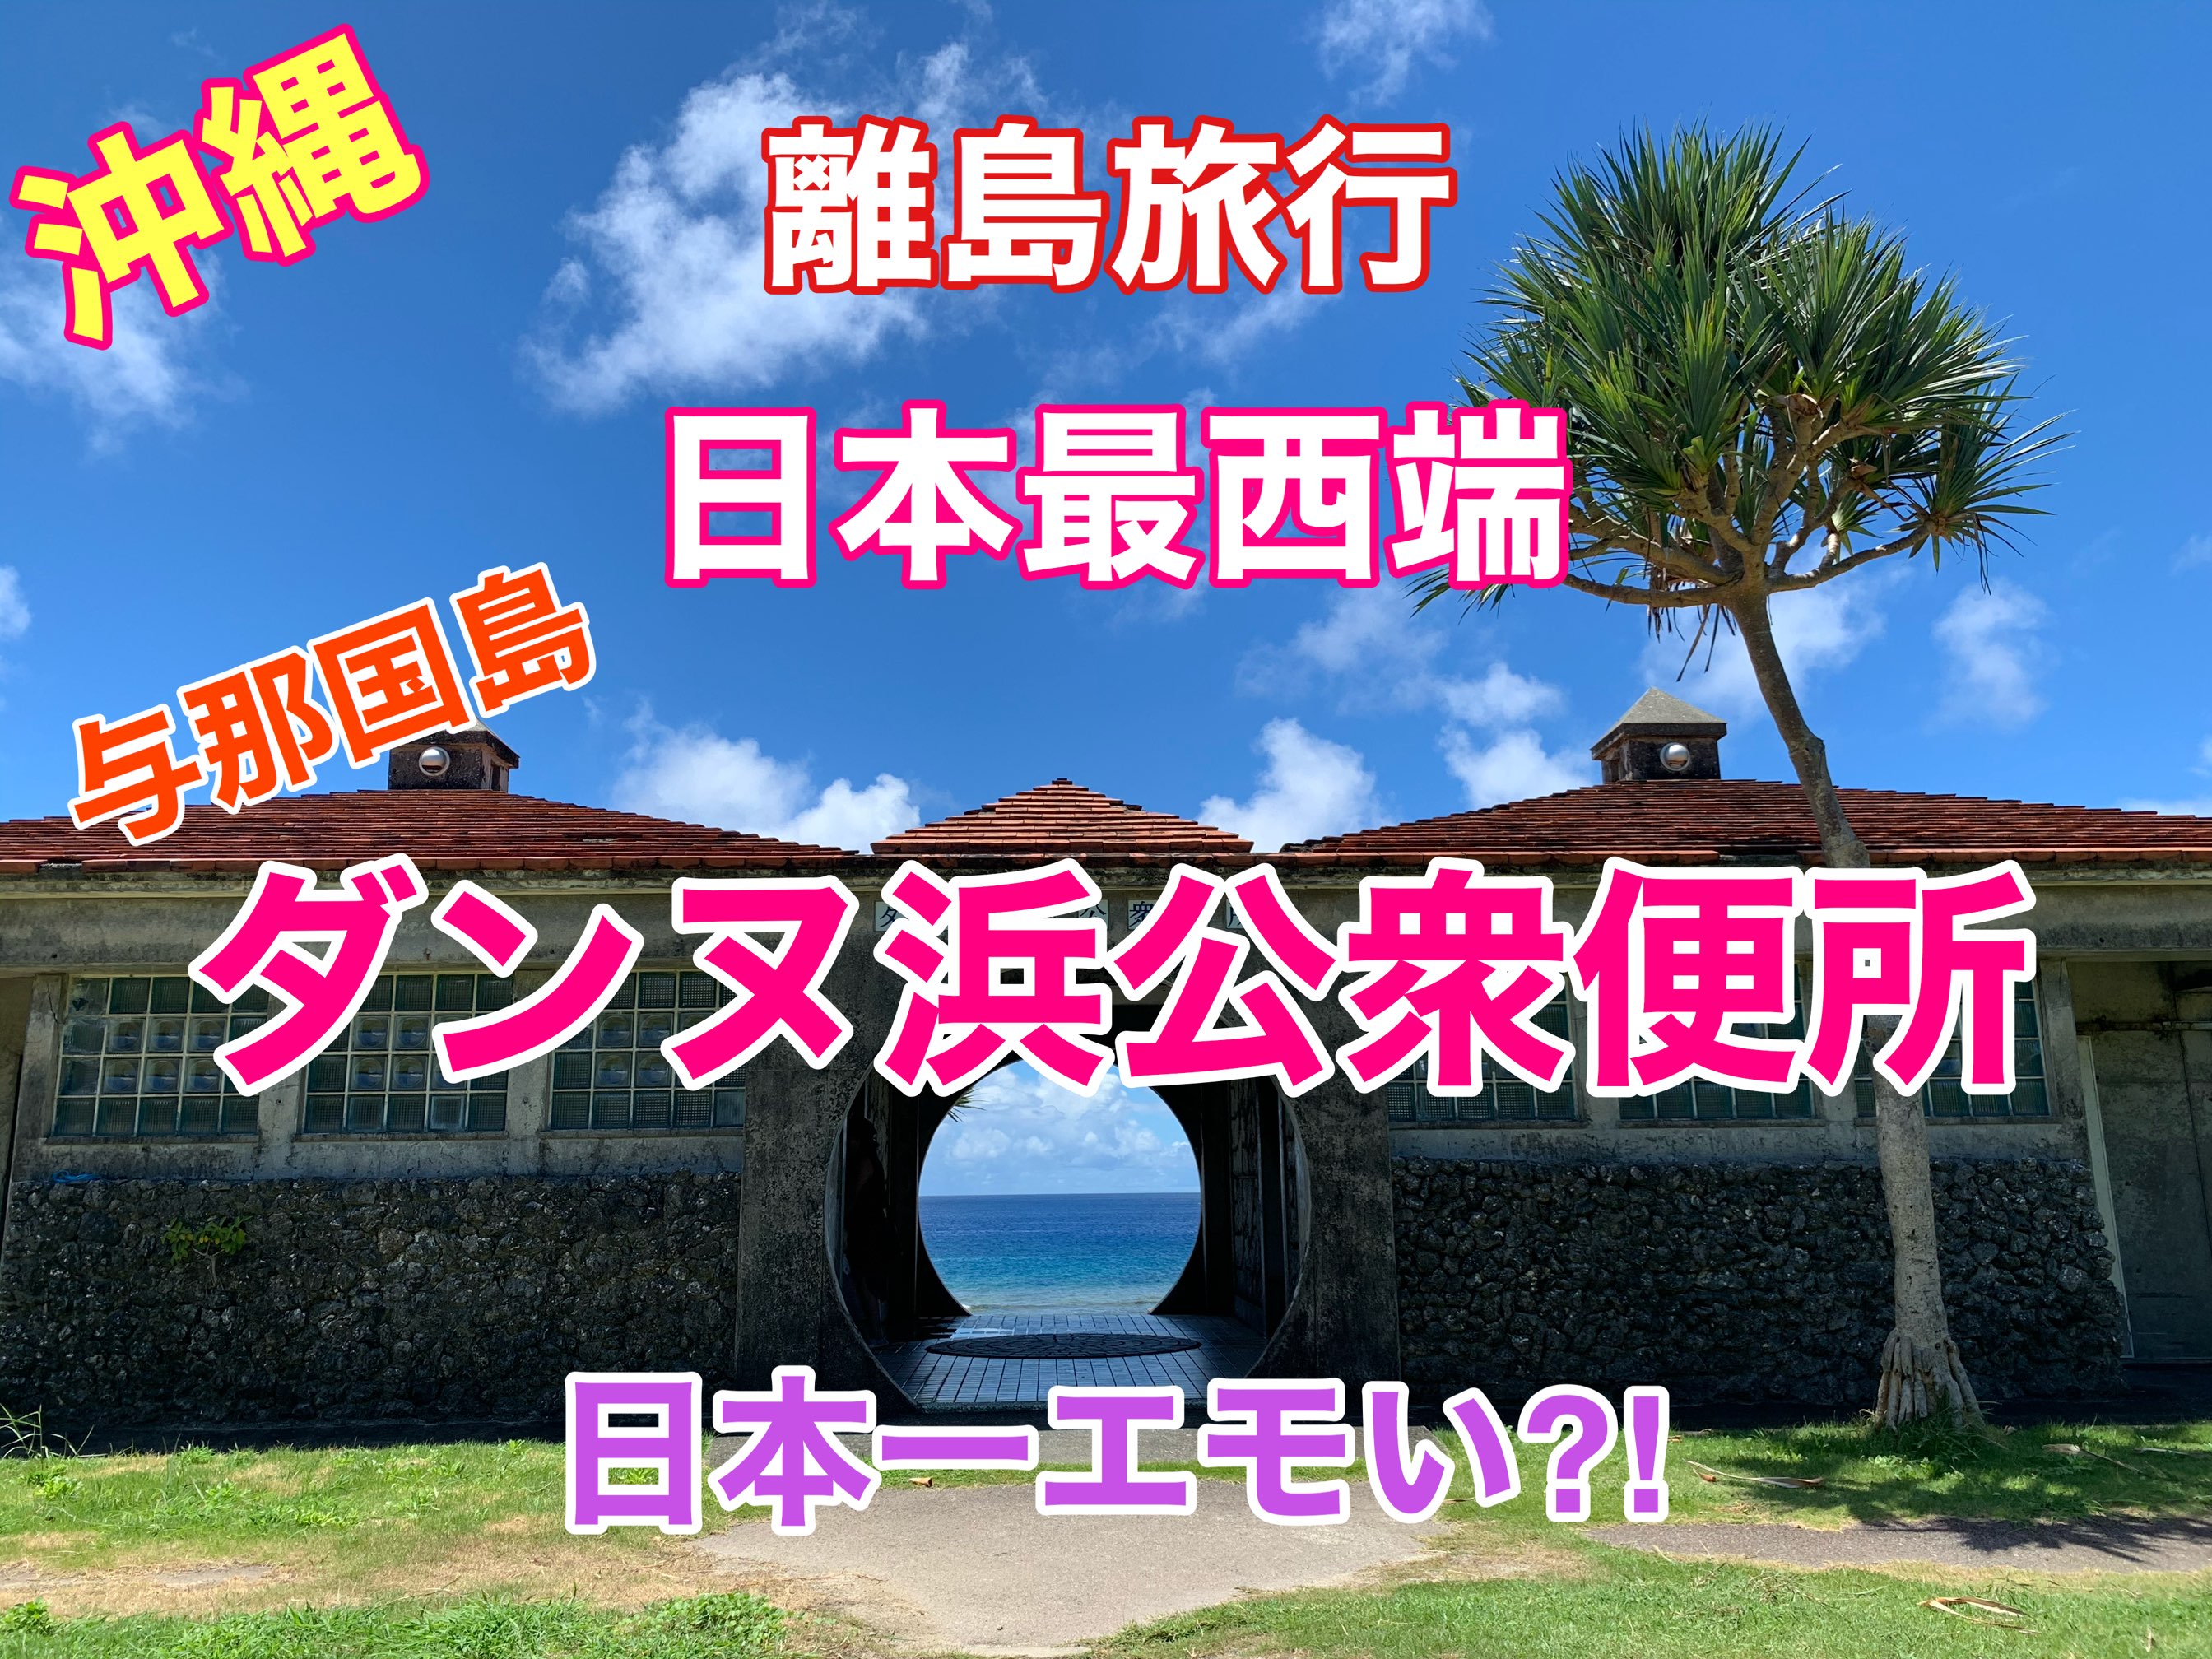 冲绳偏远岛屿旅行日本最西端与那国岛日本最好的情绪?我找到了厕所❗️